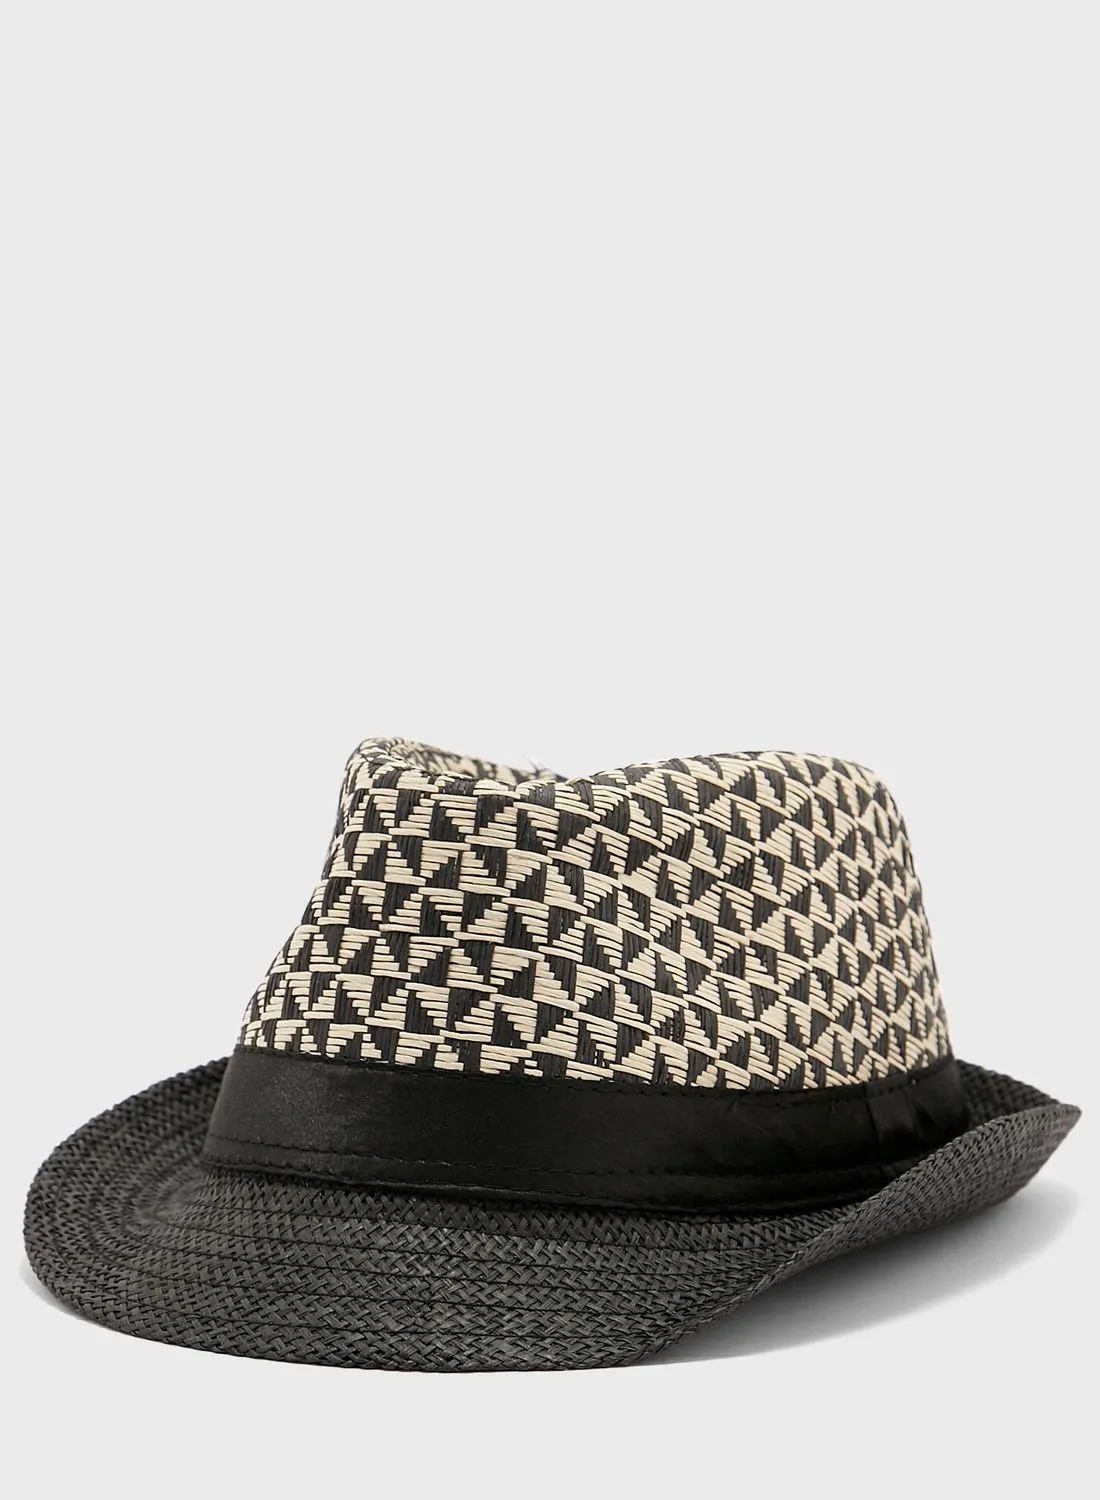 قبعة روبرت وود المنسوجة من القش